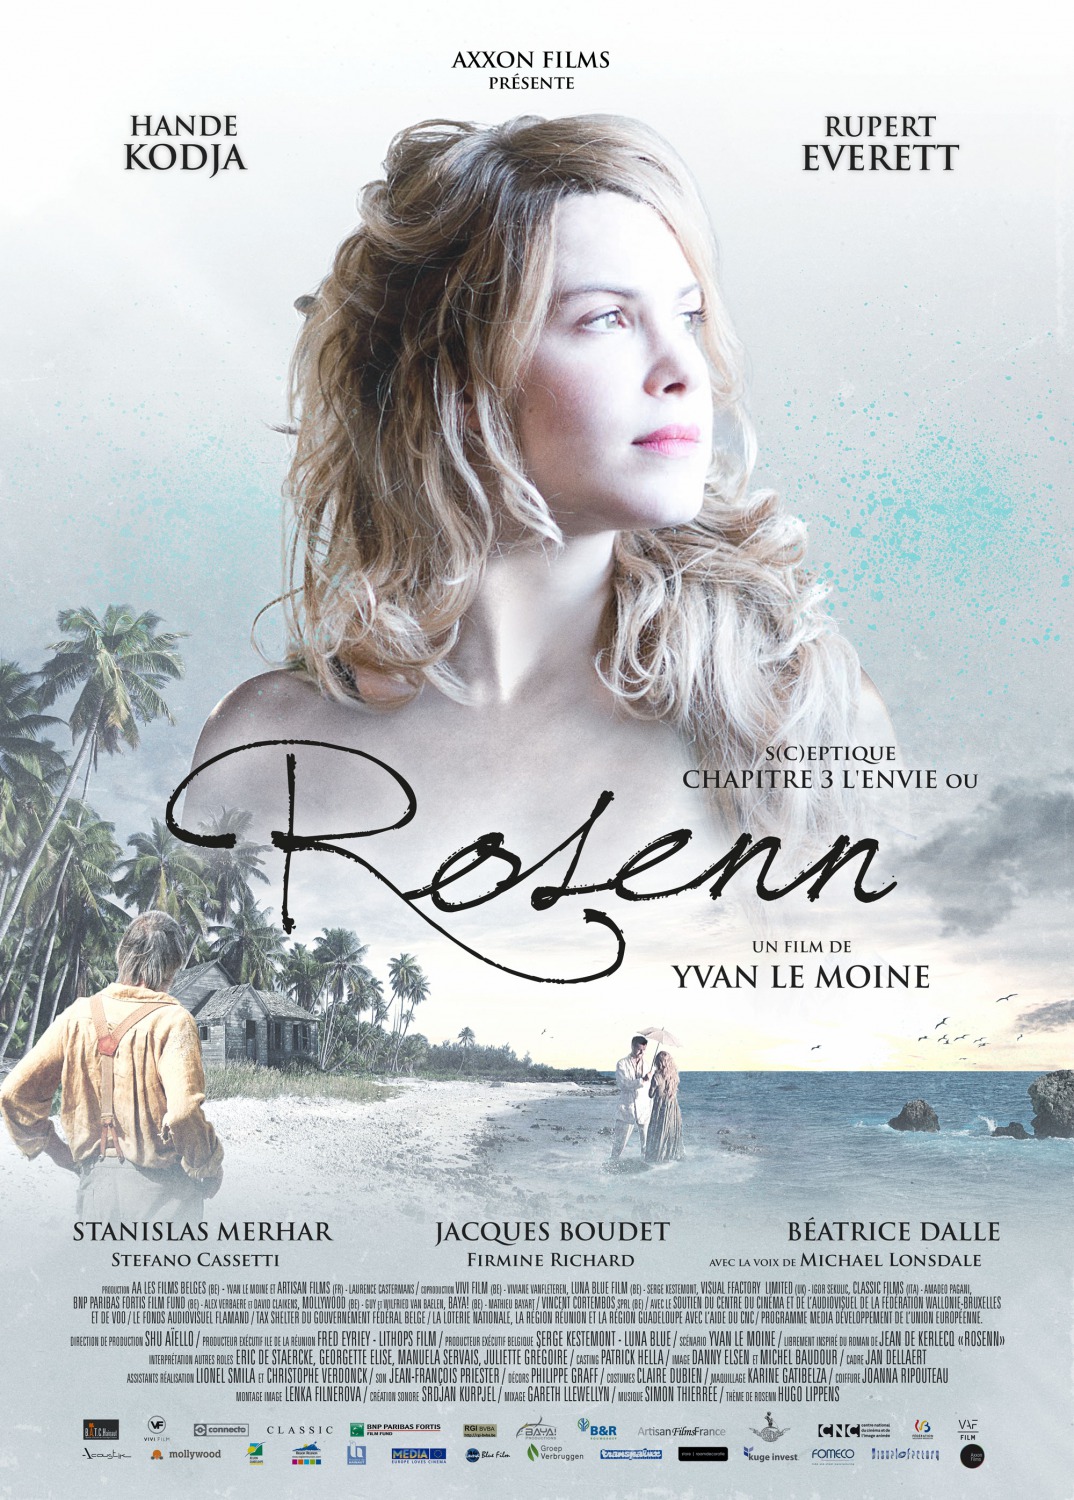 Extra Large Movie Poster Image for Rosenn 